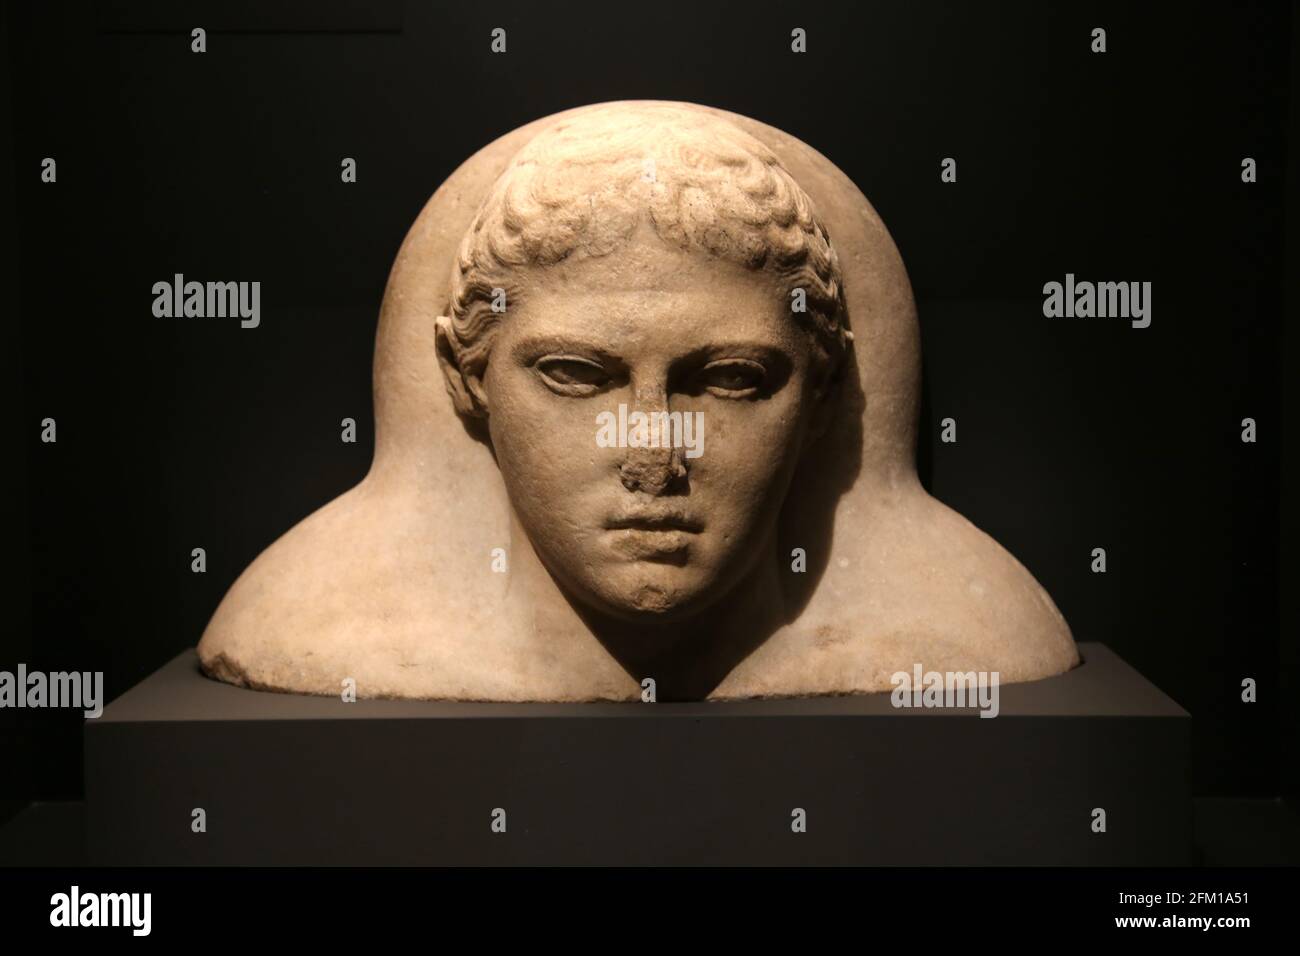 Cabeza de la tapa de un mármol, sarcófago con cara en estilo griego pero de tipo fenicio. Sidón, Líbano. 5th-3rd AC. Museo Británico. Londres. Foto de stock